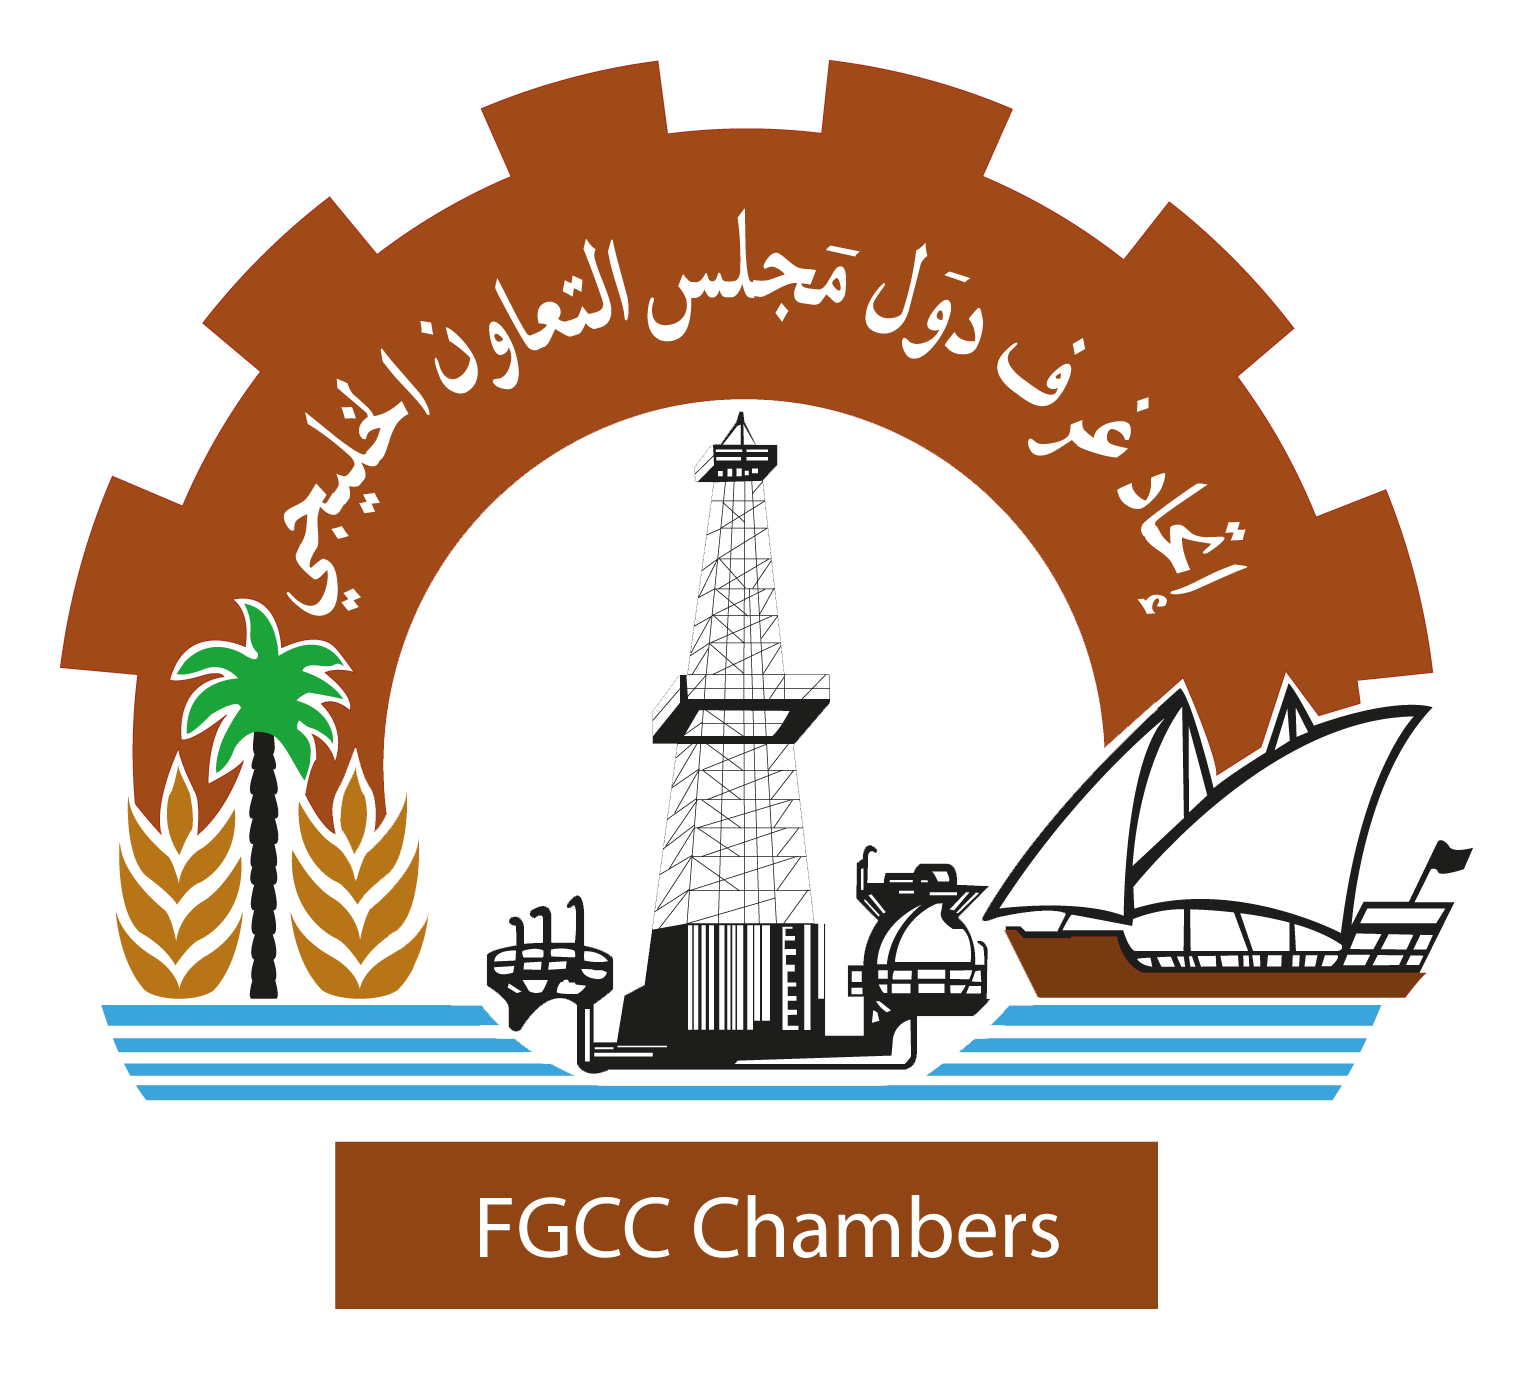 اتحاد غرف دول مجلس التعاون الخليجي |Federation of GCC Chambers